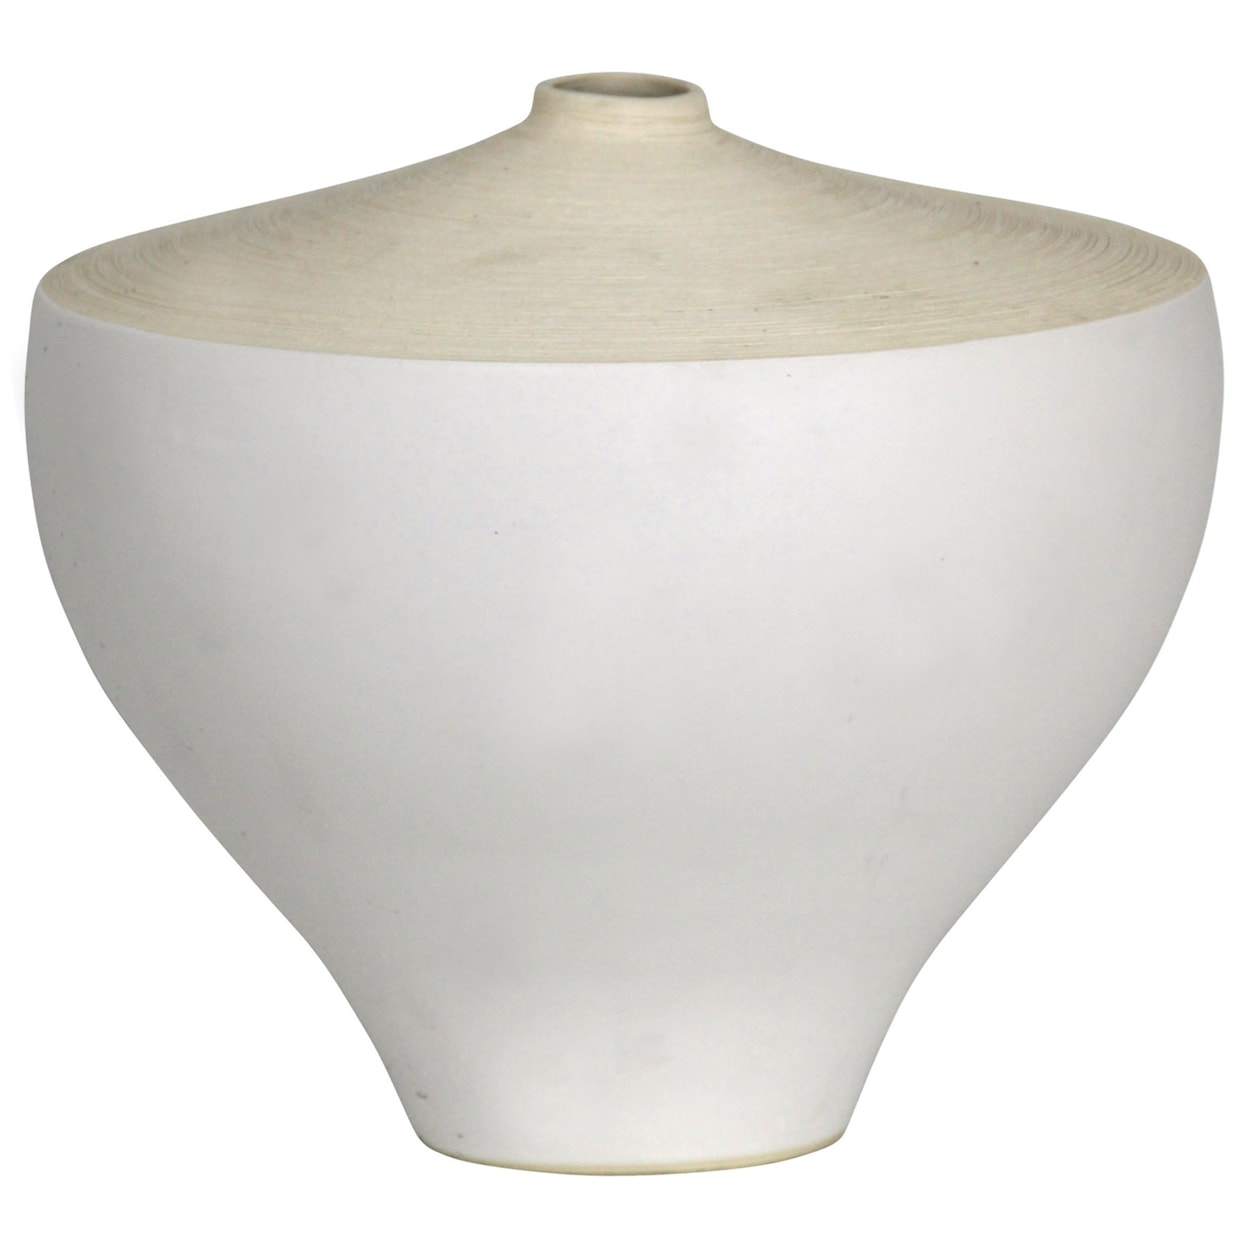 StyleCraft Accessories Small White Vase